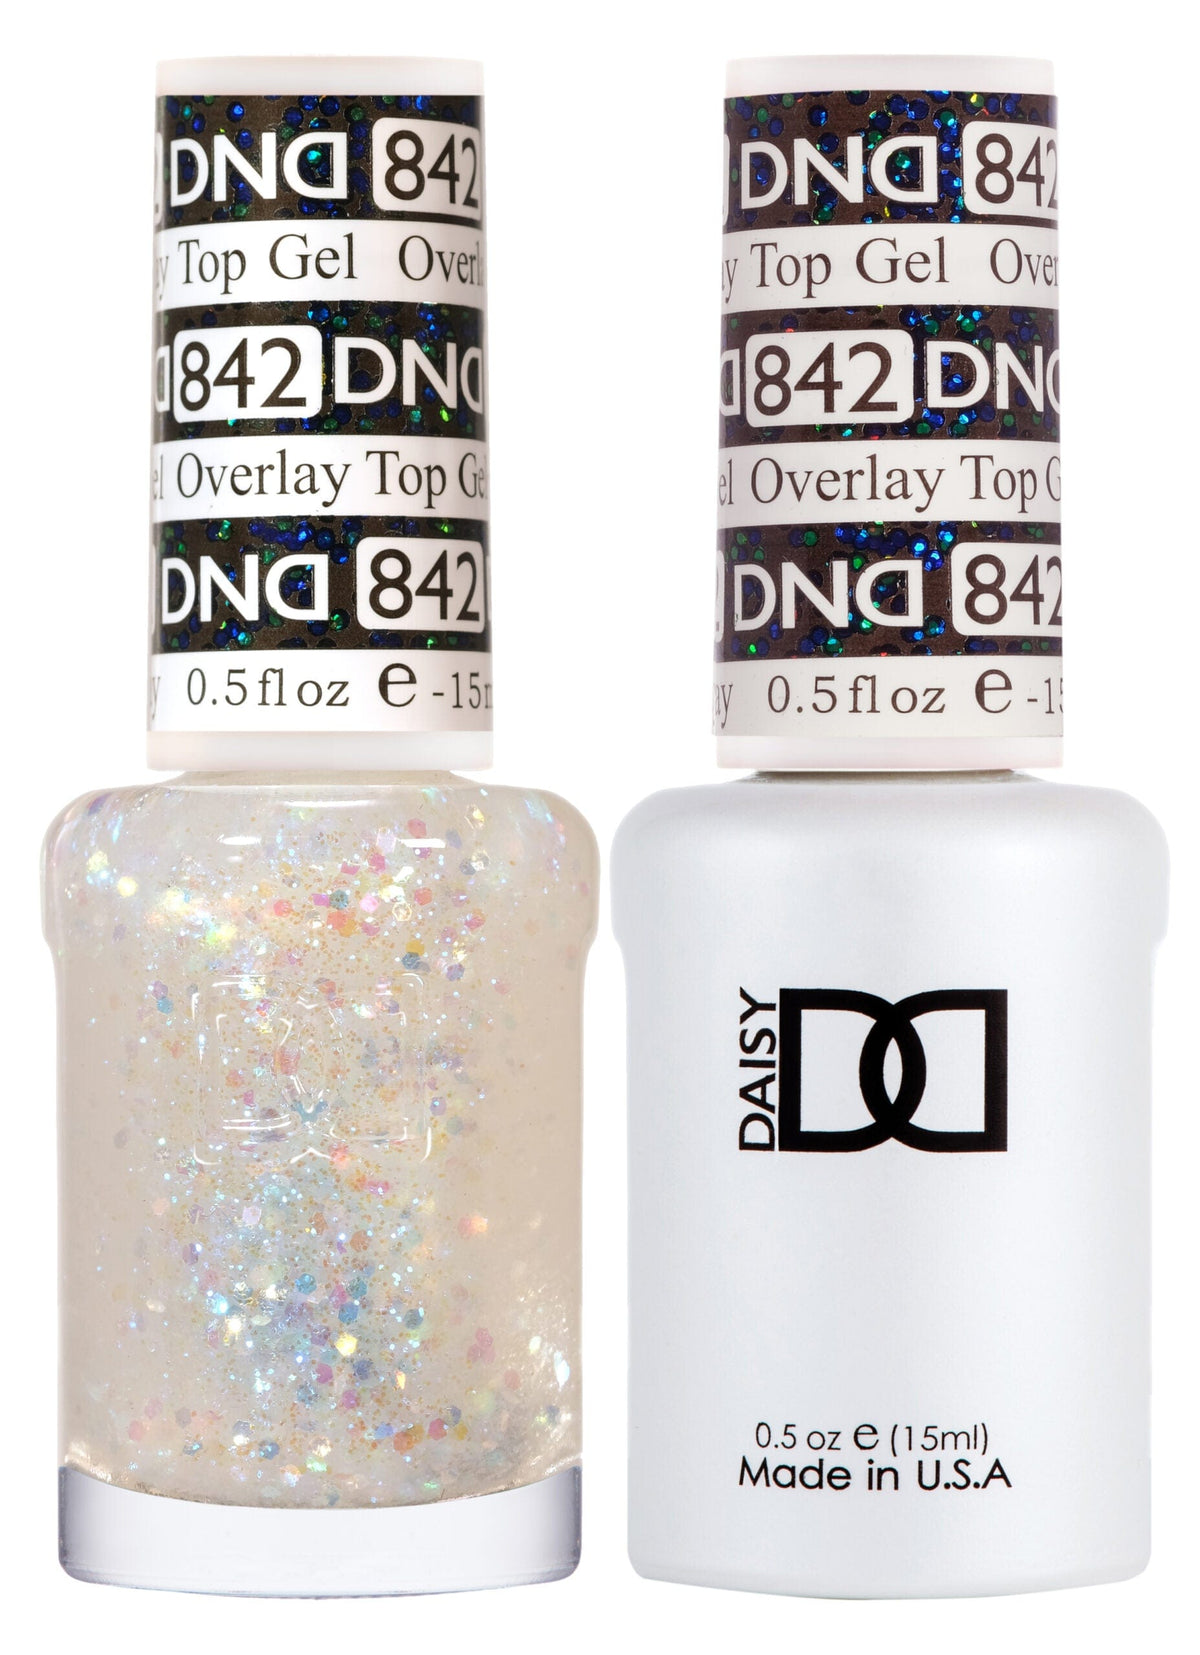 DND Duo Gel Matching Color 842 Overlay Top Gel